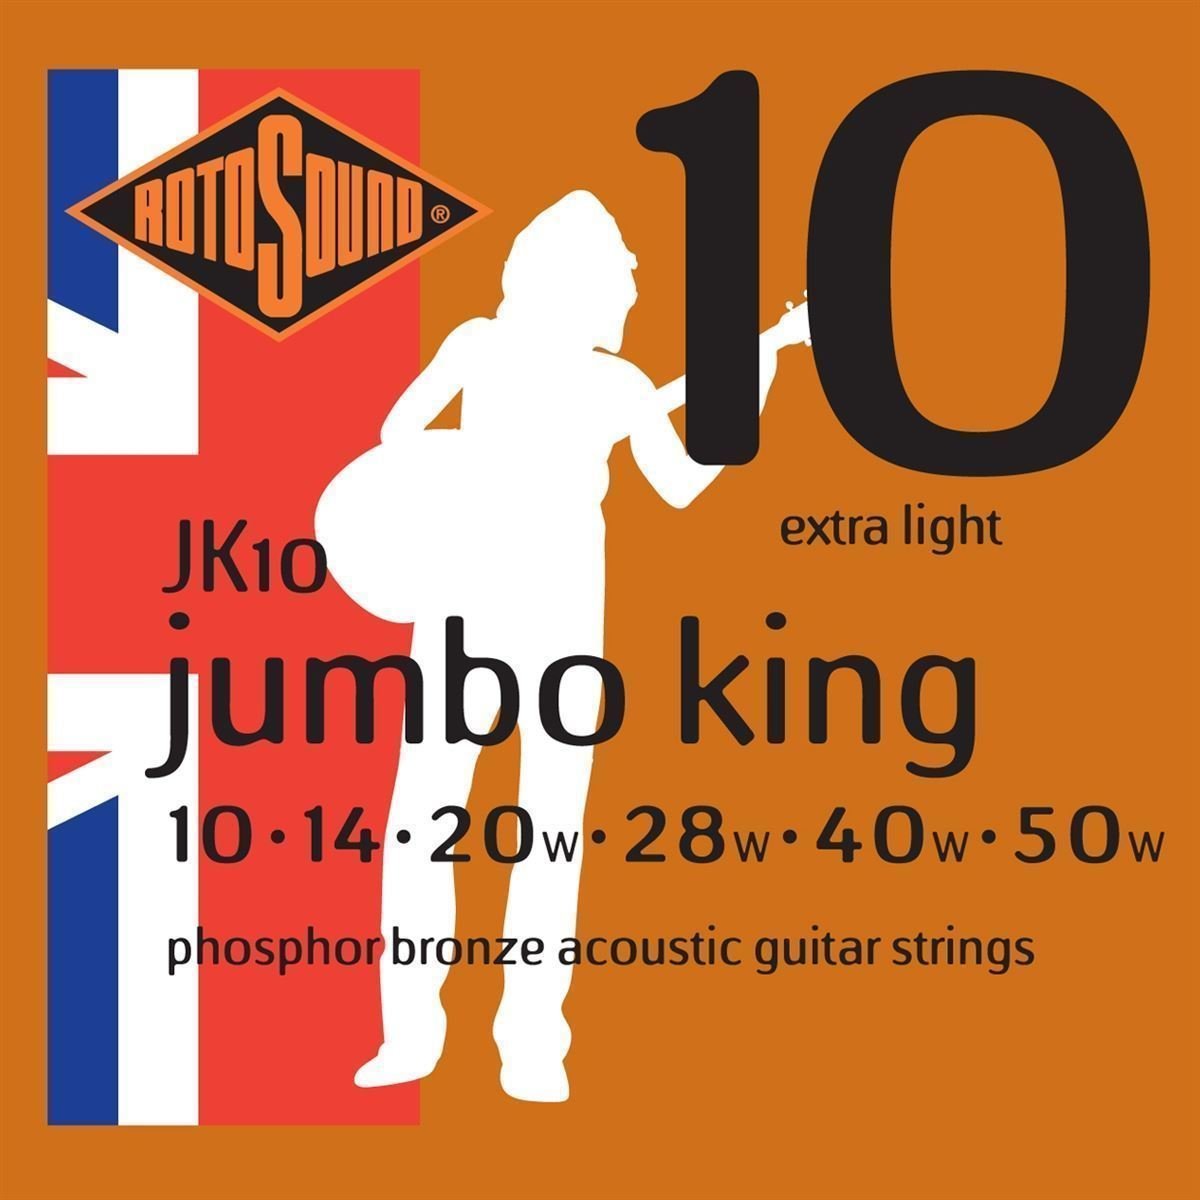 Snaren voor akoestische gitaar Rotosound JK10